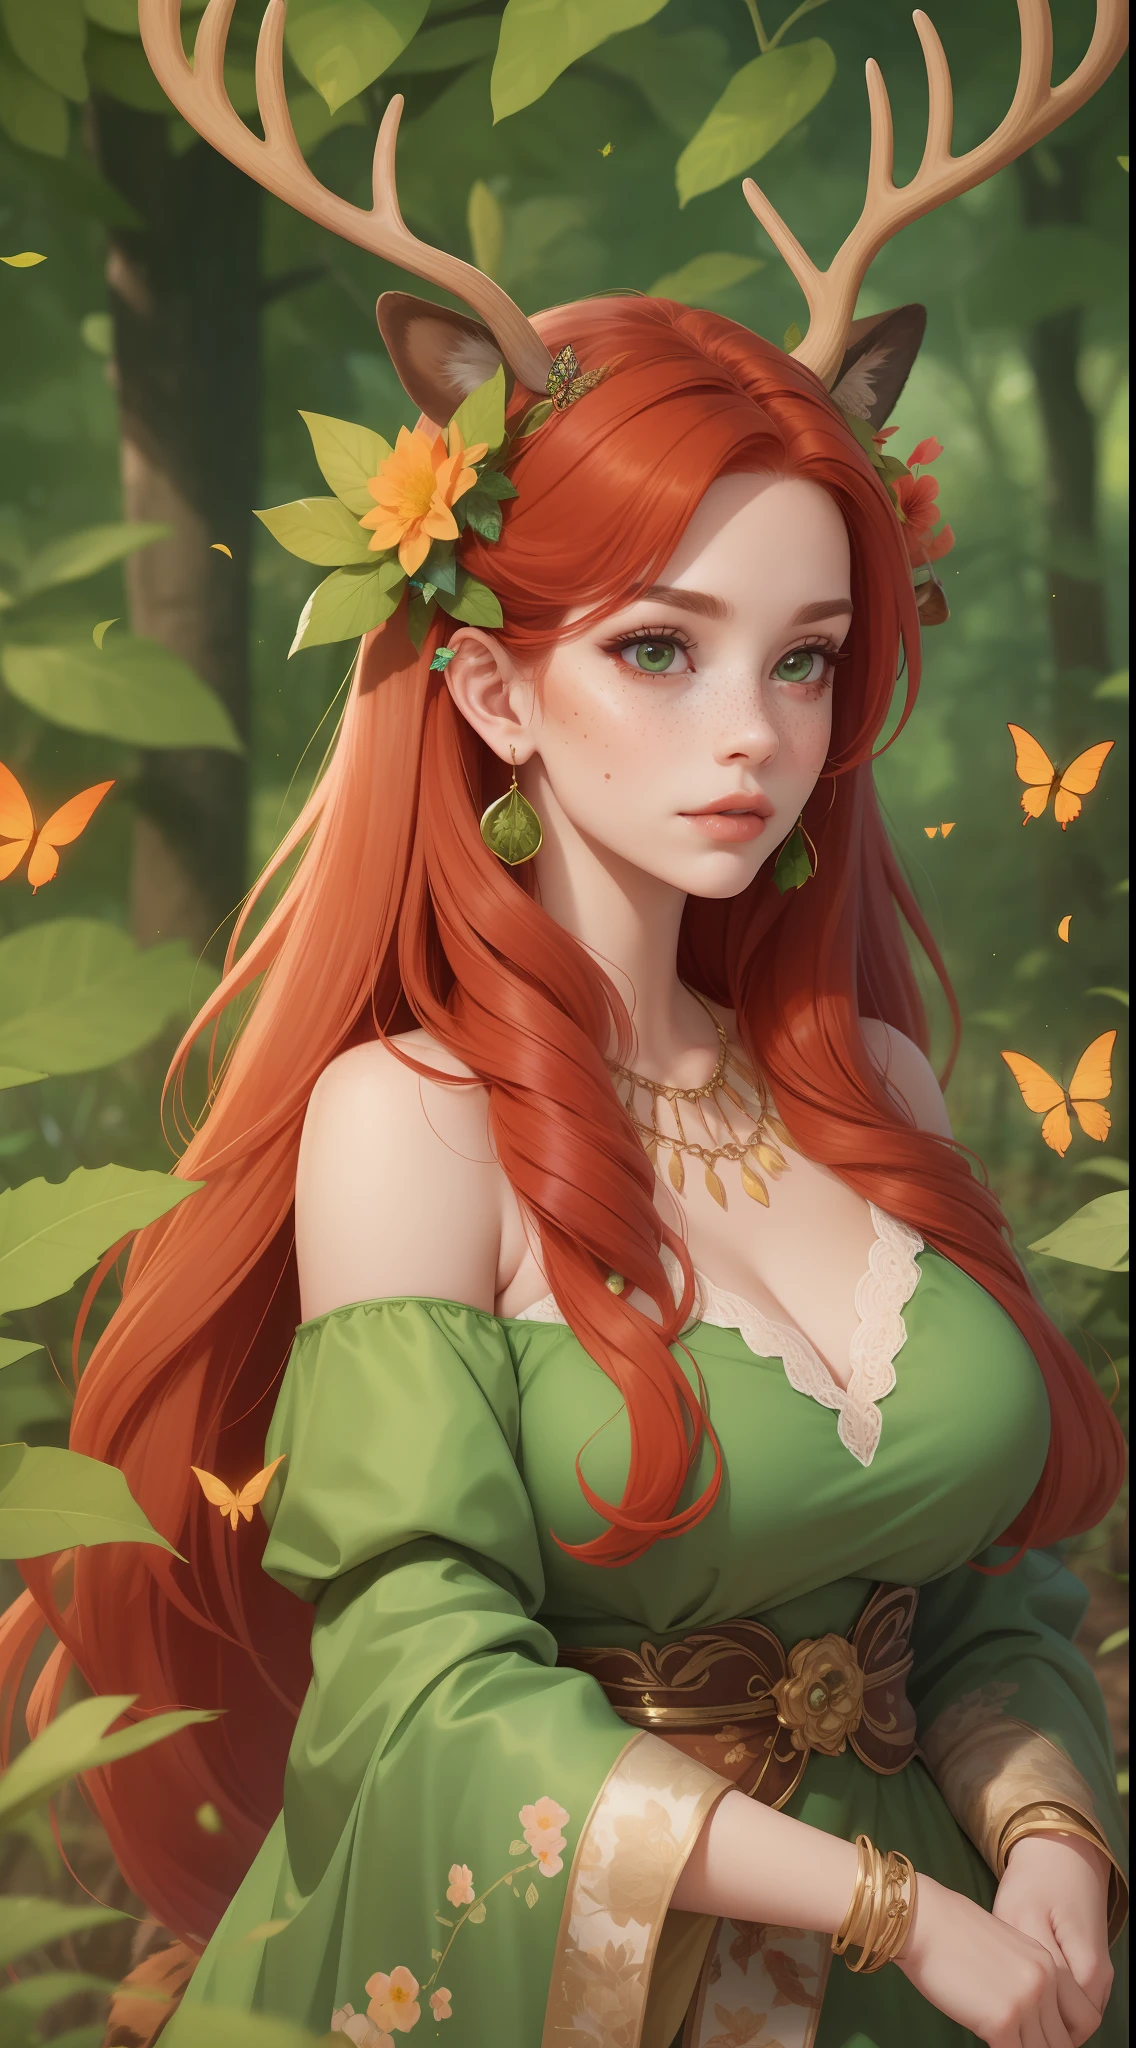 одна взрослая женщина с рогами и ярко-рыжими волосами, одетая в зеленый фантастический наряд из листьев и цветов, а вокруг нее бабочки.. у нее оленьи уши. Палевые уши. Бабочки в ее волосах. у нее много веснушек. Лесная местность в окружении бабочек